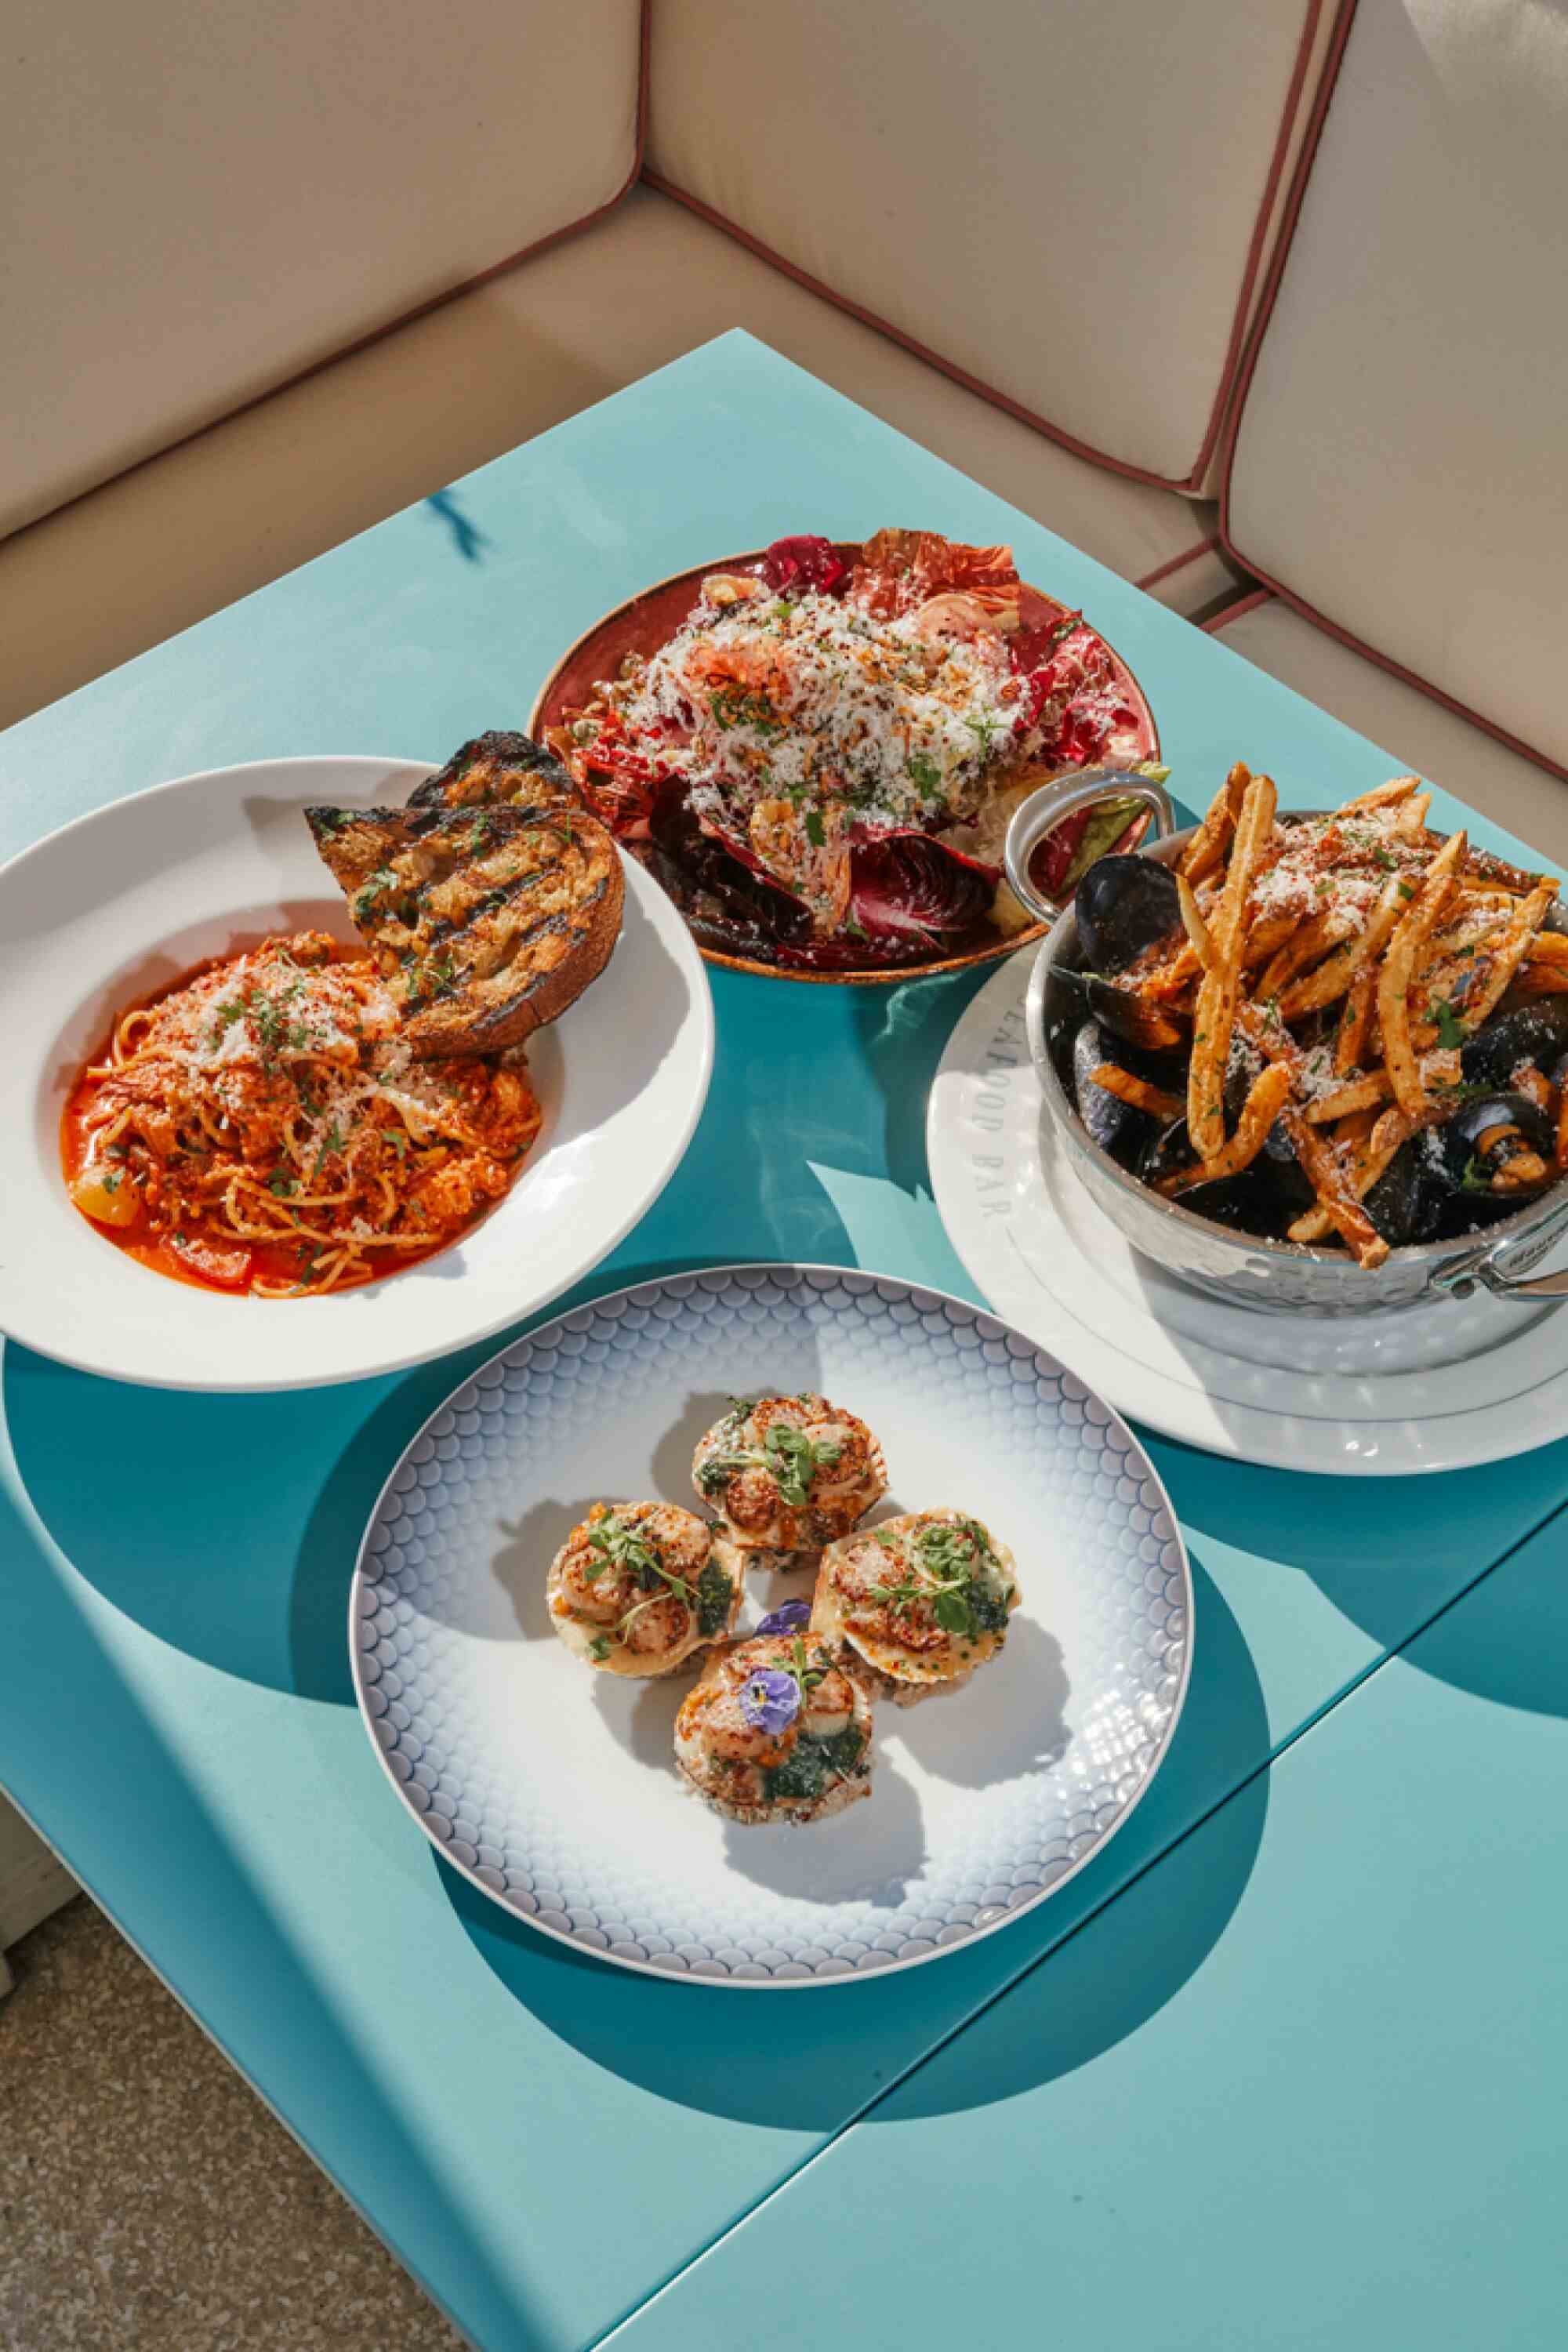 Vier Teller mit Essen auf einer türkisfarbenen Tischplatte draußen auf einer Restaurantterrasse.